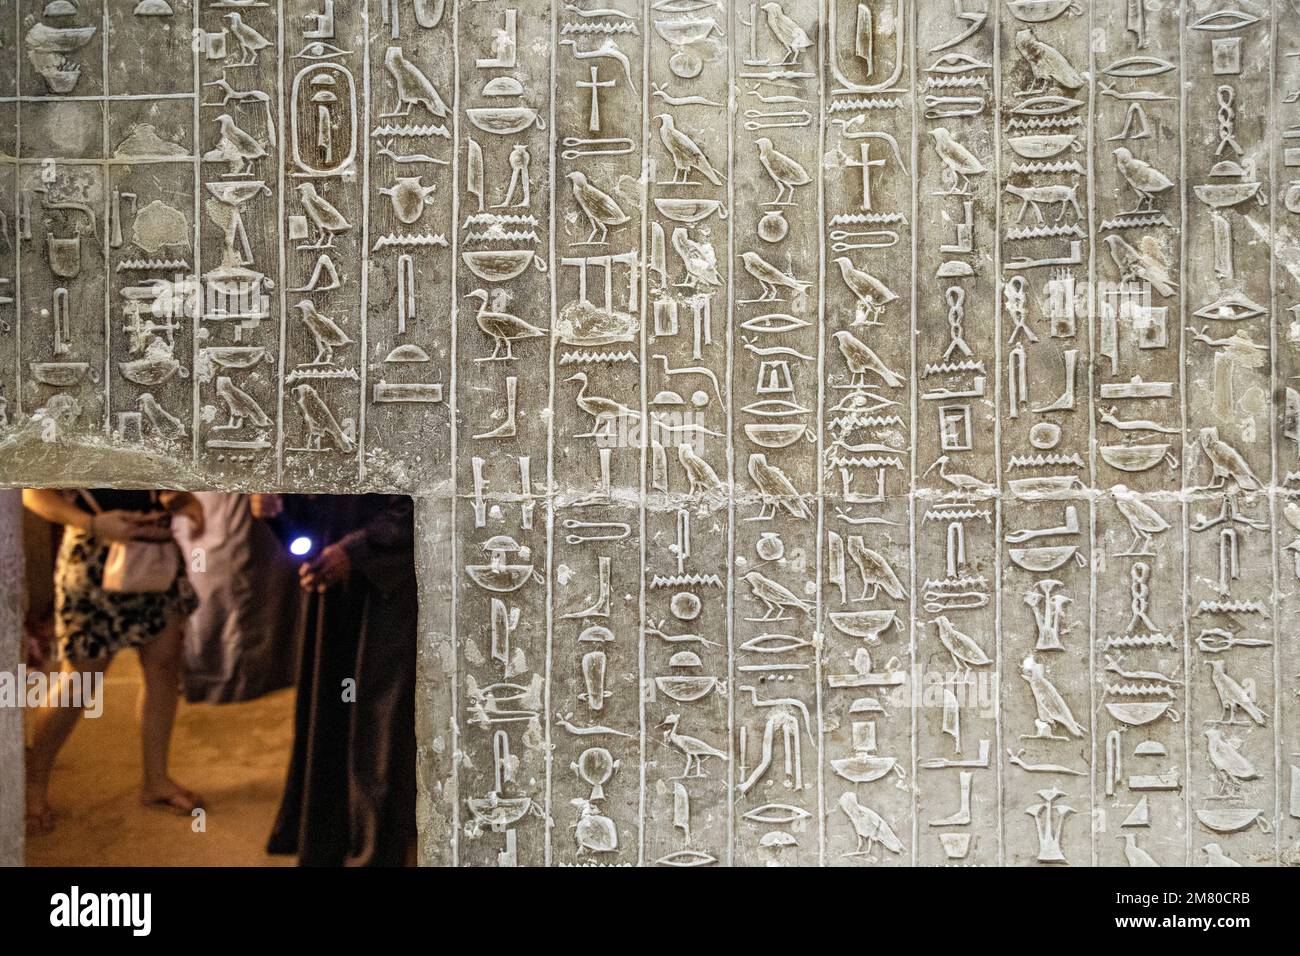 ÄGYPTISCHE HIEROGLYPHEN, FIGURATIVE HEILIGE SCHRIFTEN, DAS GRAB VON KAGEMNI, WESIR WÄHREND DER HERRSCHAFT VON KÖNIG TETI, DIE NEKROPOLE SAKKARA, DIE REGION MEMPHIS, EHEMALIGE HAUPTSTADT DES ALTEN ÄGYPTEN, KAIRO, ÄGYPTEN, AFRIKA Stockfoto